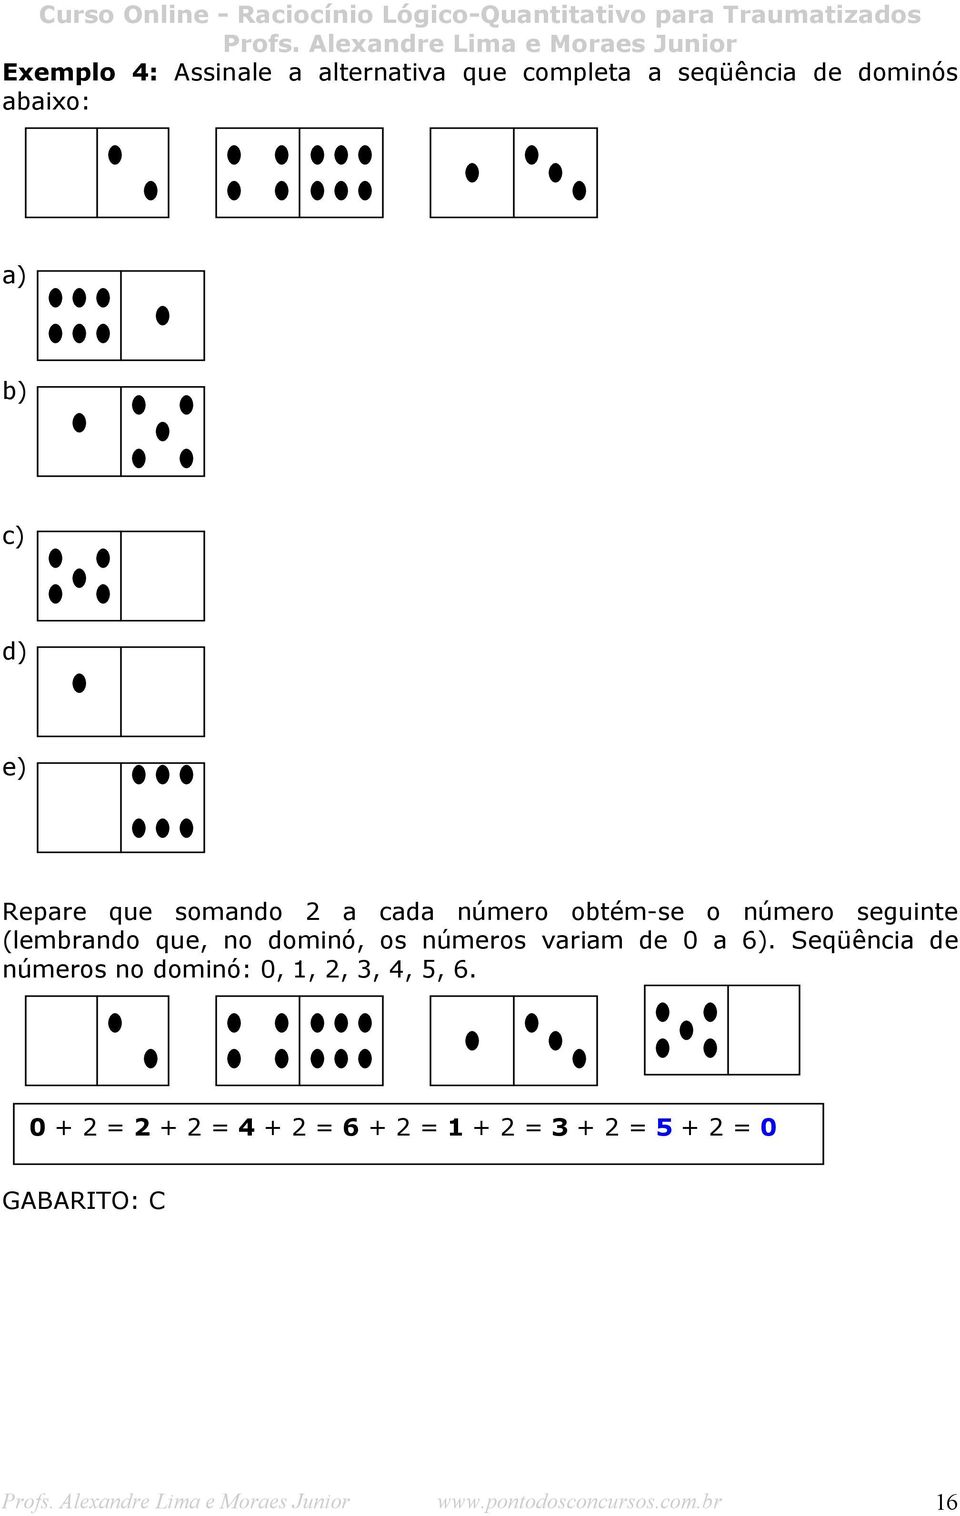 os números variam de 0 a 6). Seqüência de números no dominó: 0, 1, 2, 3, 4, 5, 6.